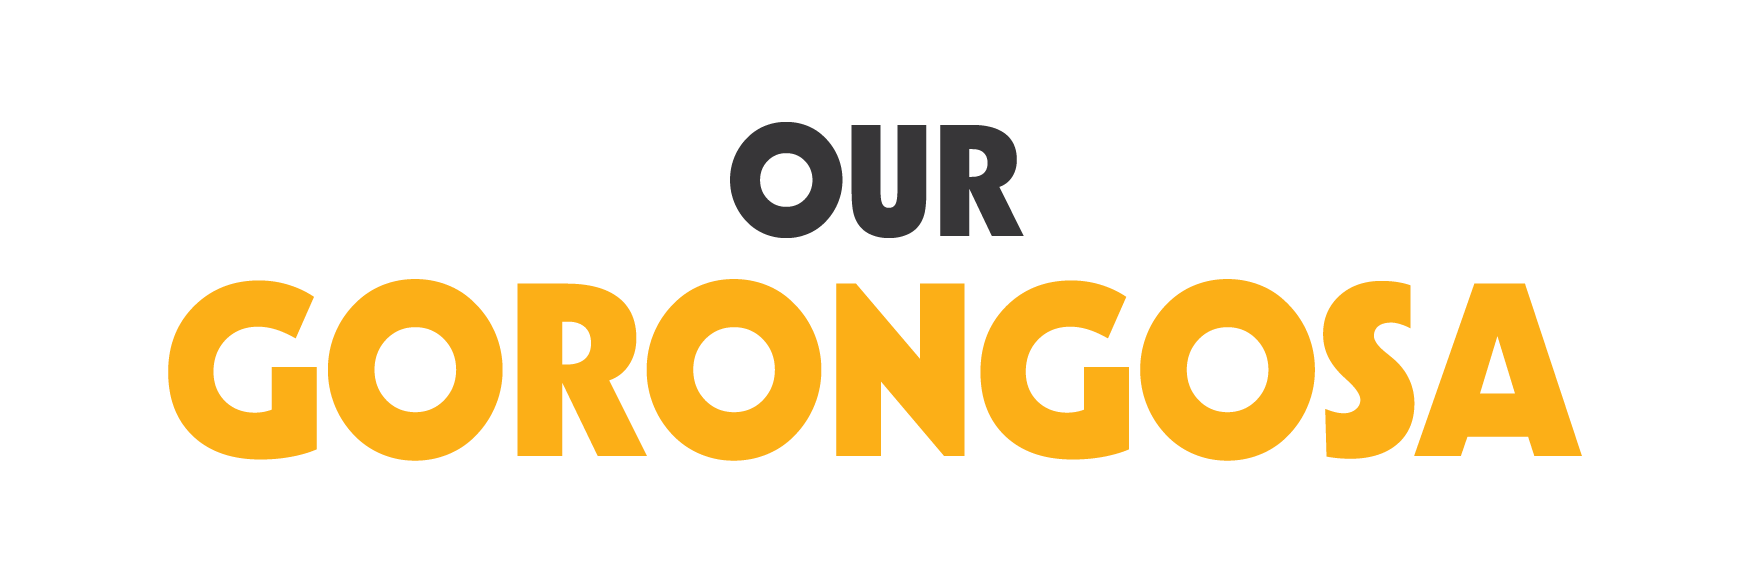 Our Gorongosa Logo - KeHE CAREtrade Partner